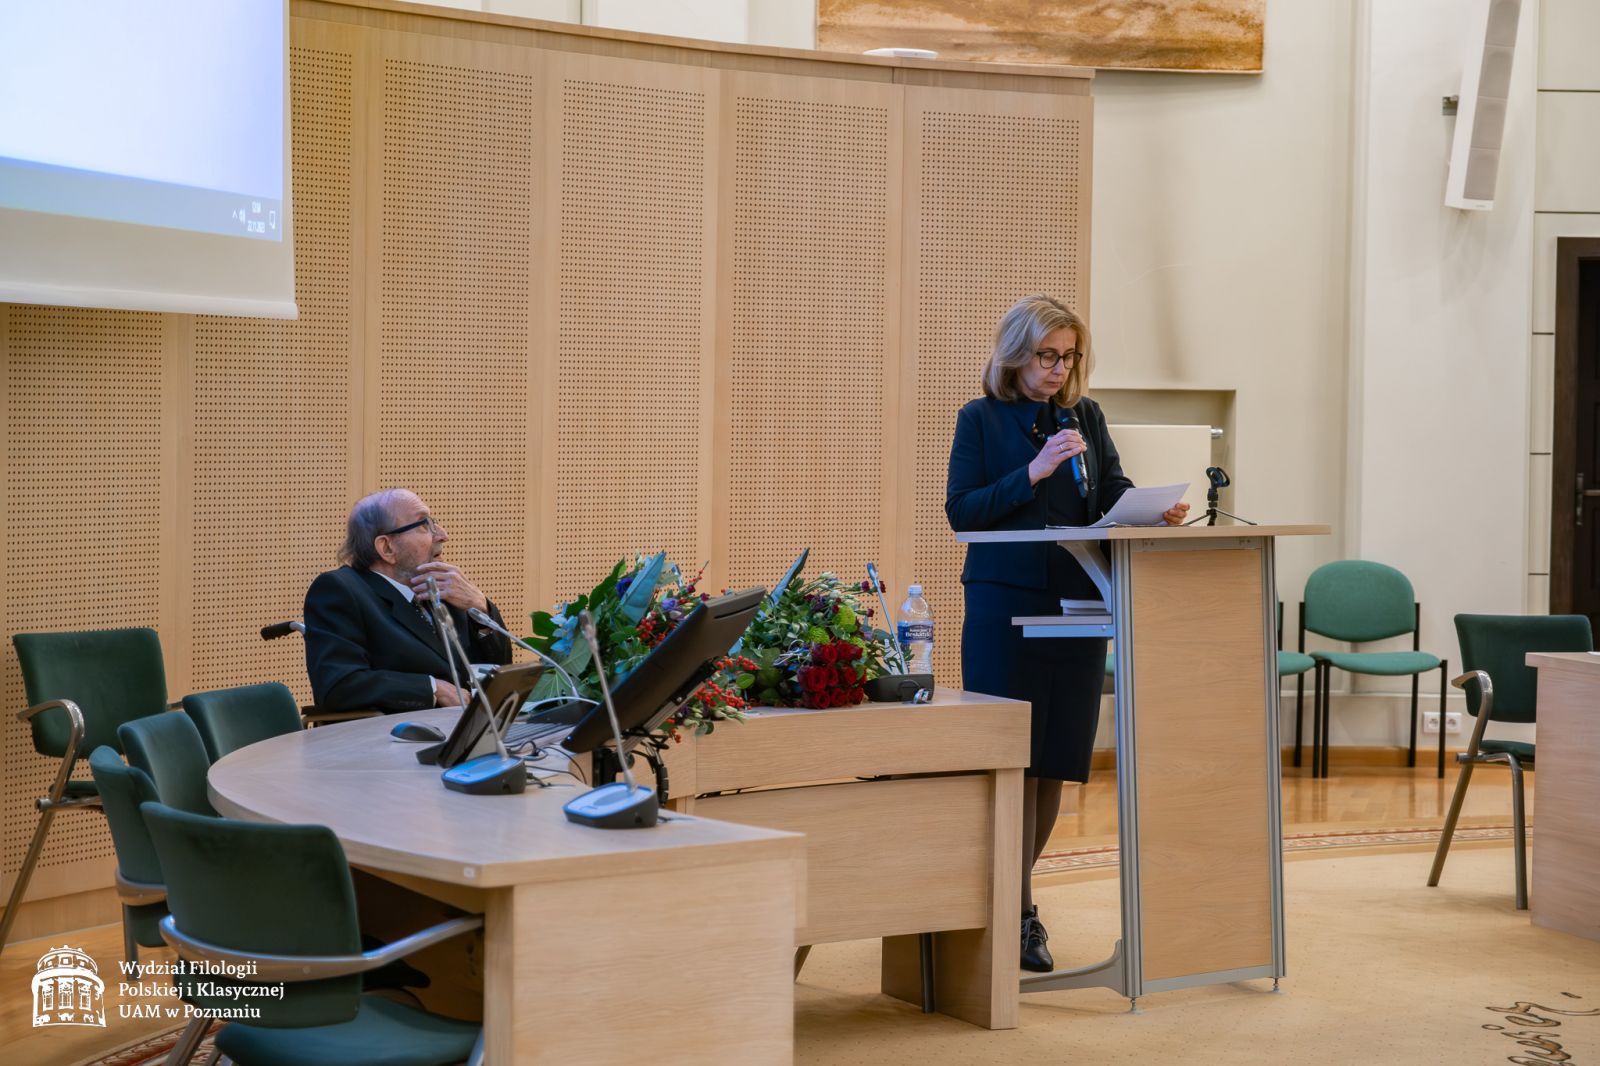 Prof. Małgorzata Okulicz-Kozaryn stoi przy mównicy, przemawia do mikrofonu.